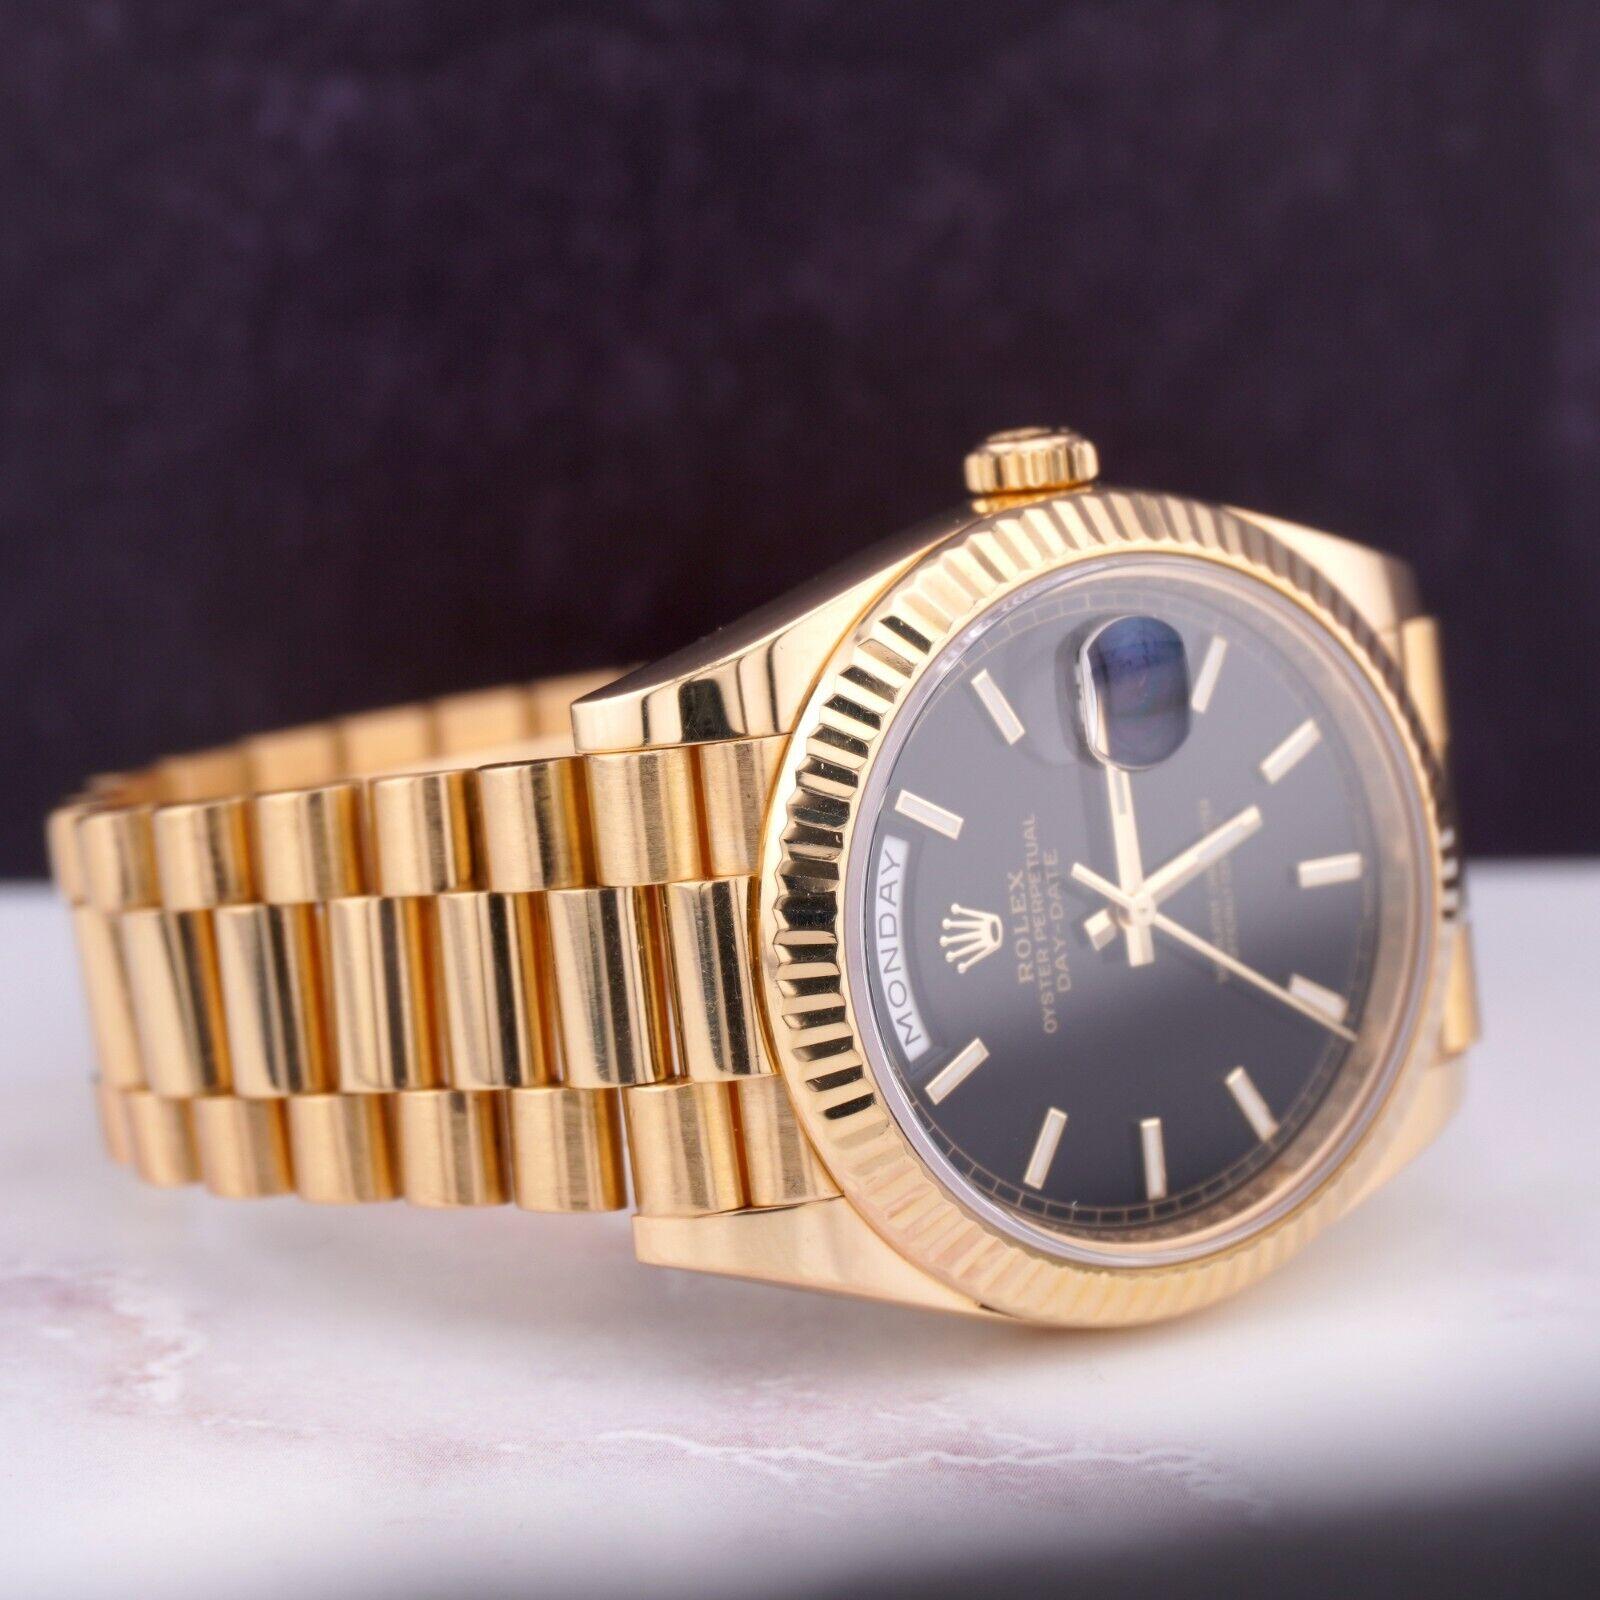 Rolex Day-Date Präsident 40mm Uhr. Ein Pre-owned Uhr w / Original-Box und 2019 Karte. Uhr ist 100% authentisch und kommt mit Echtheitskarte. Watch Reference ist 228238 und ist in ausgezeichnetem Zustand (siehe Bilder). Die Farbe des Zifferblatts ist